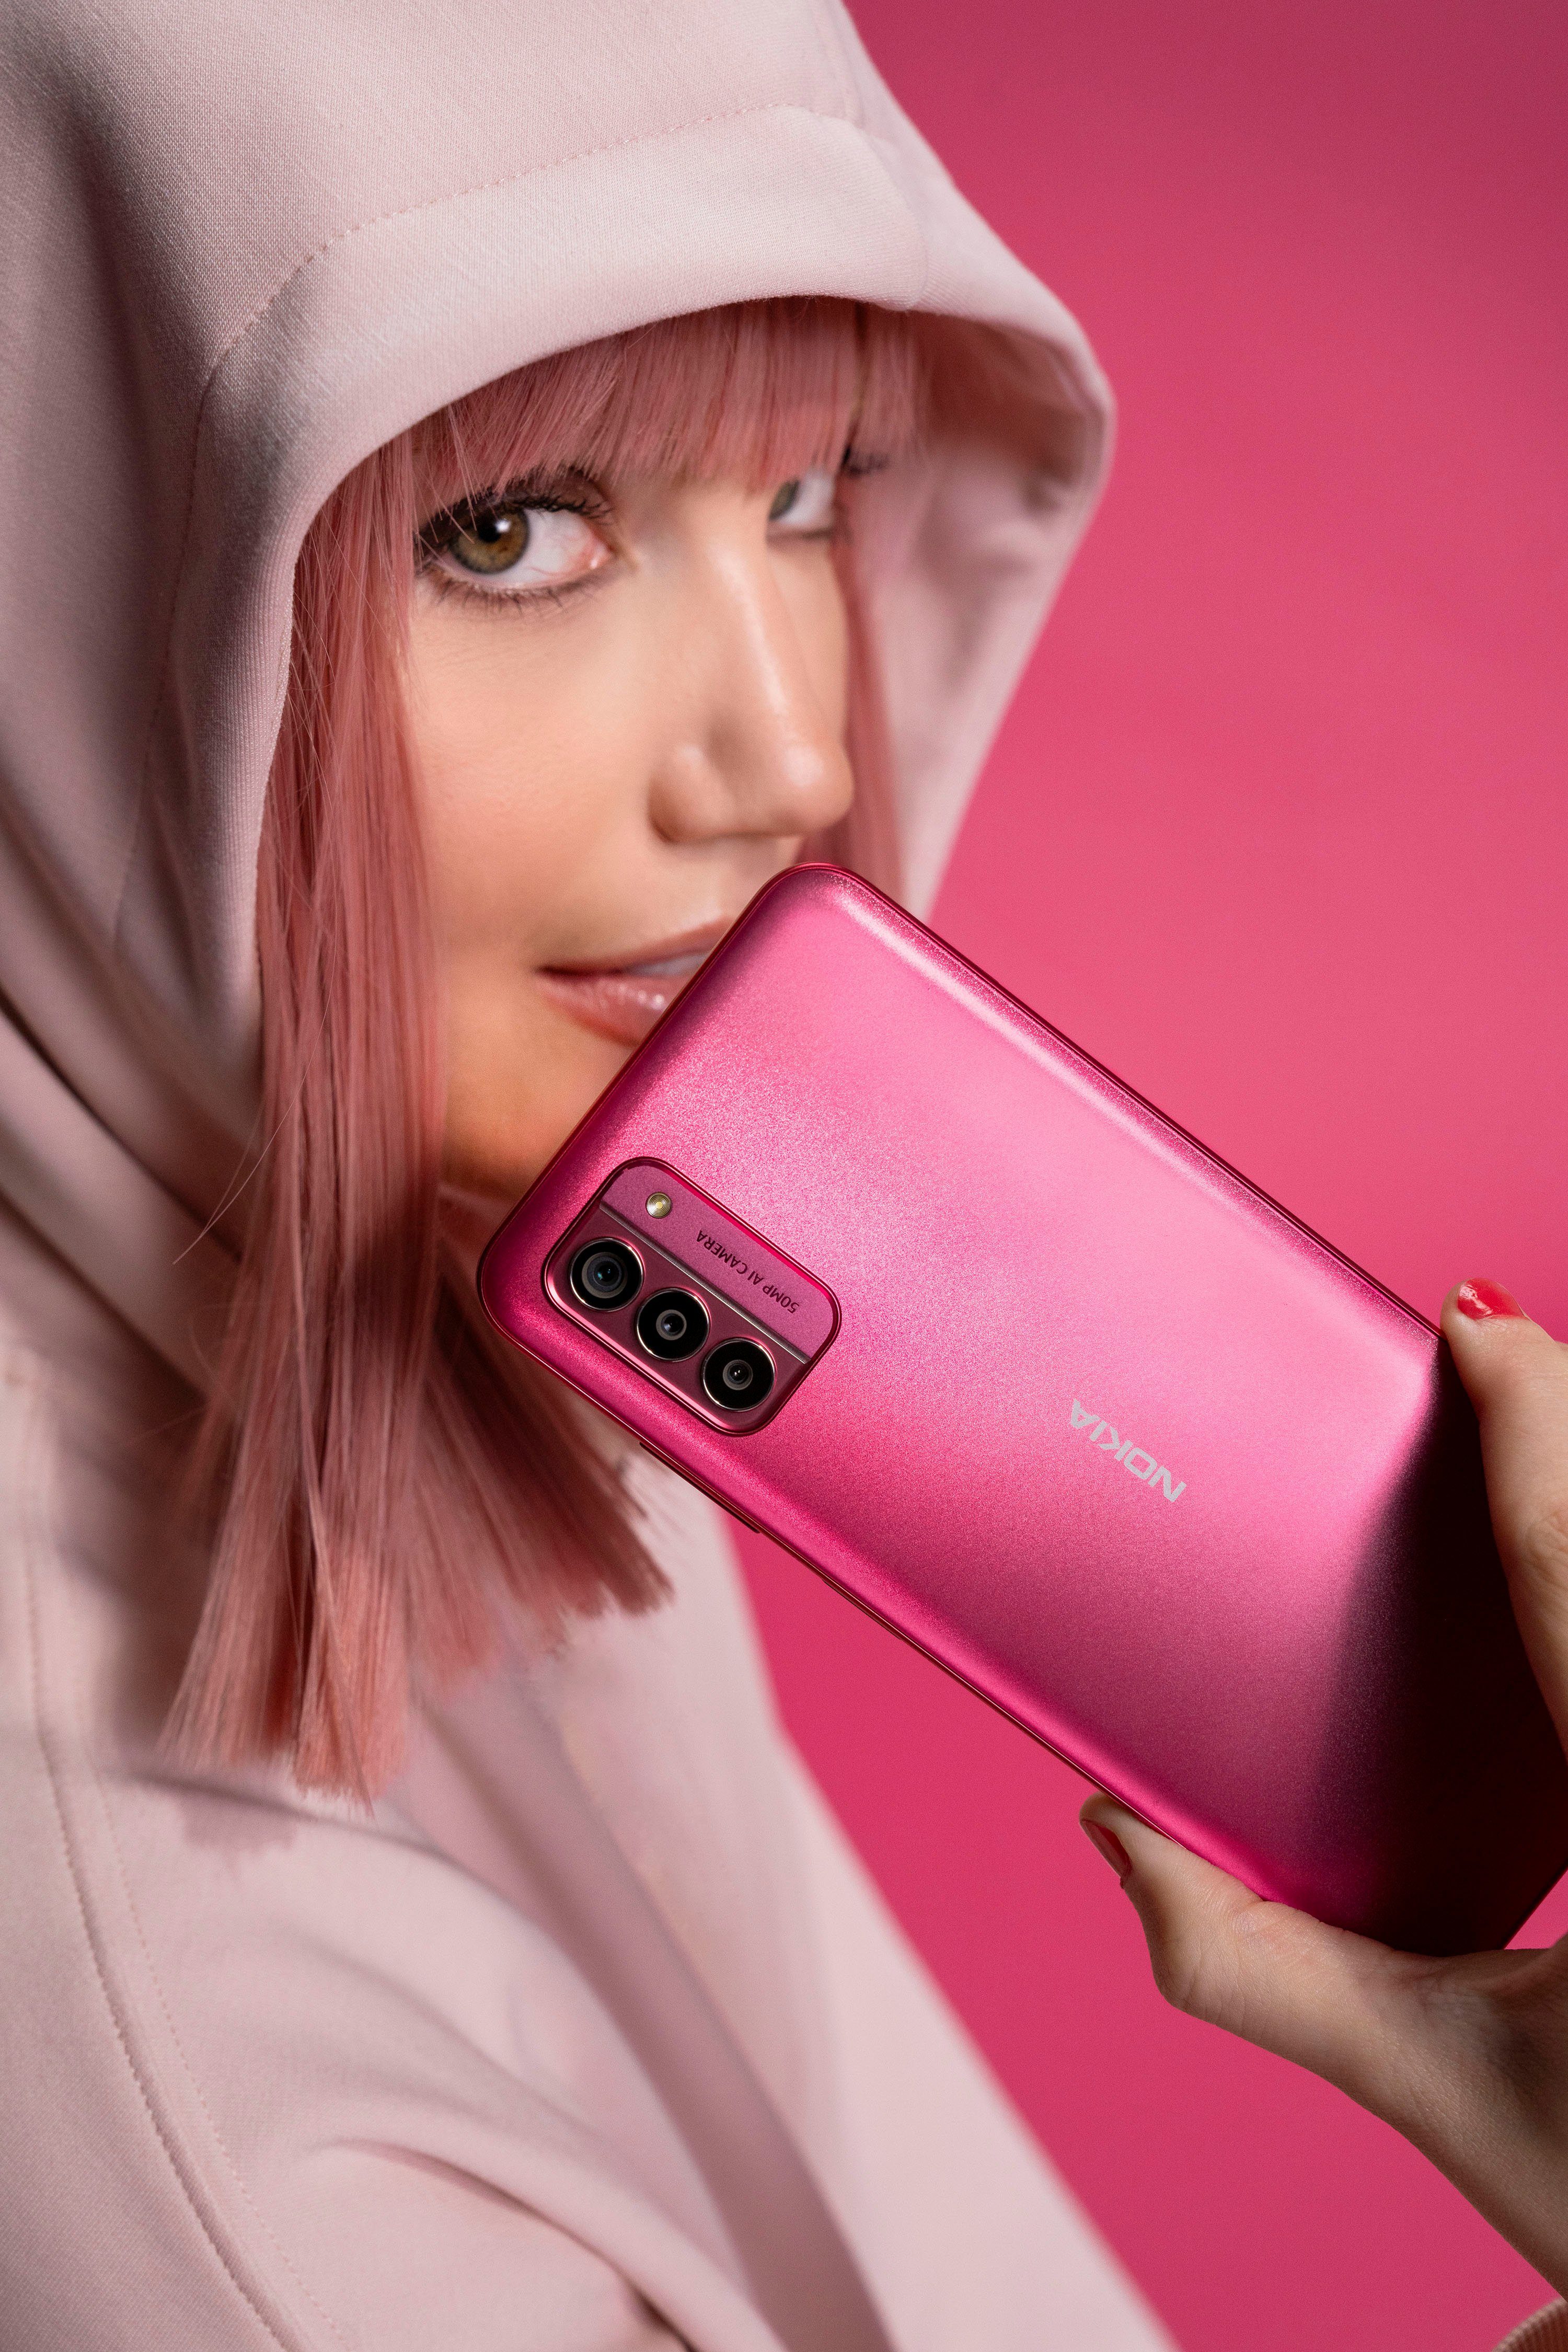 Kamera) GB 50 MP Speicherplatz, G42 (16,9 cm/6,65 128 pink Zoll, Smartphone Nokia